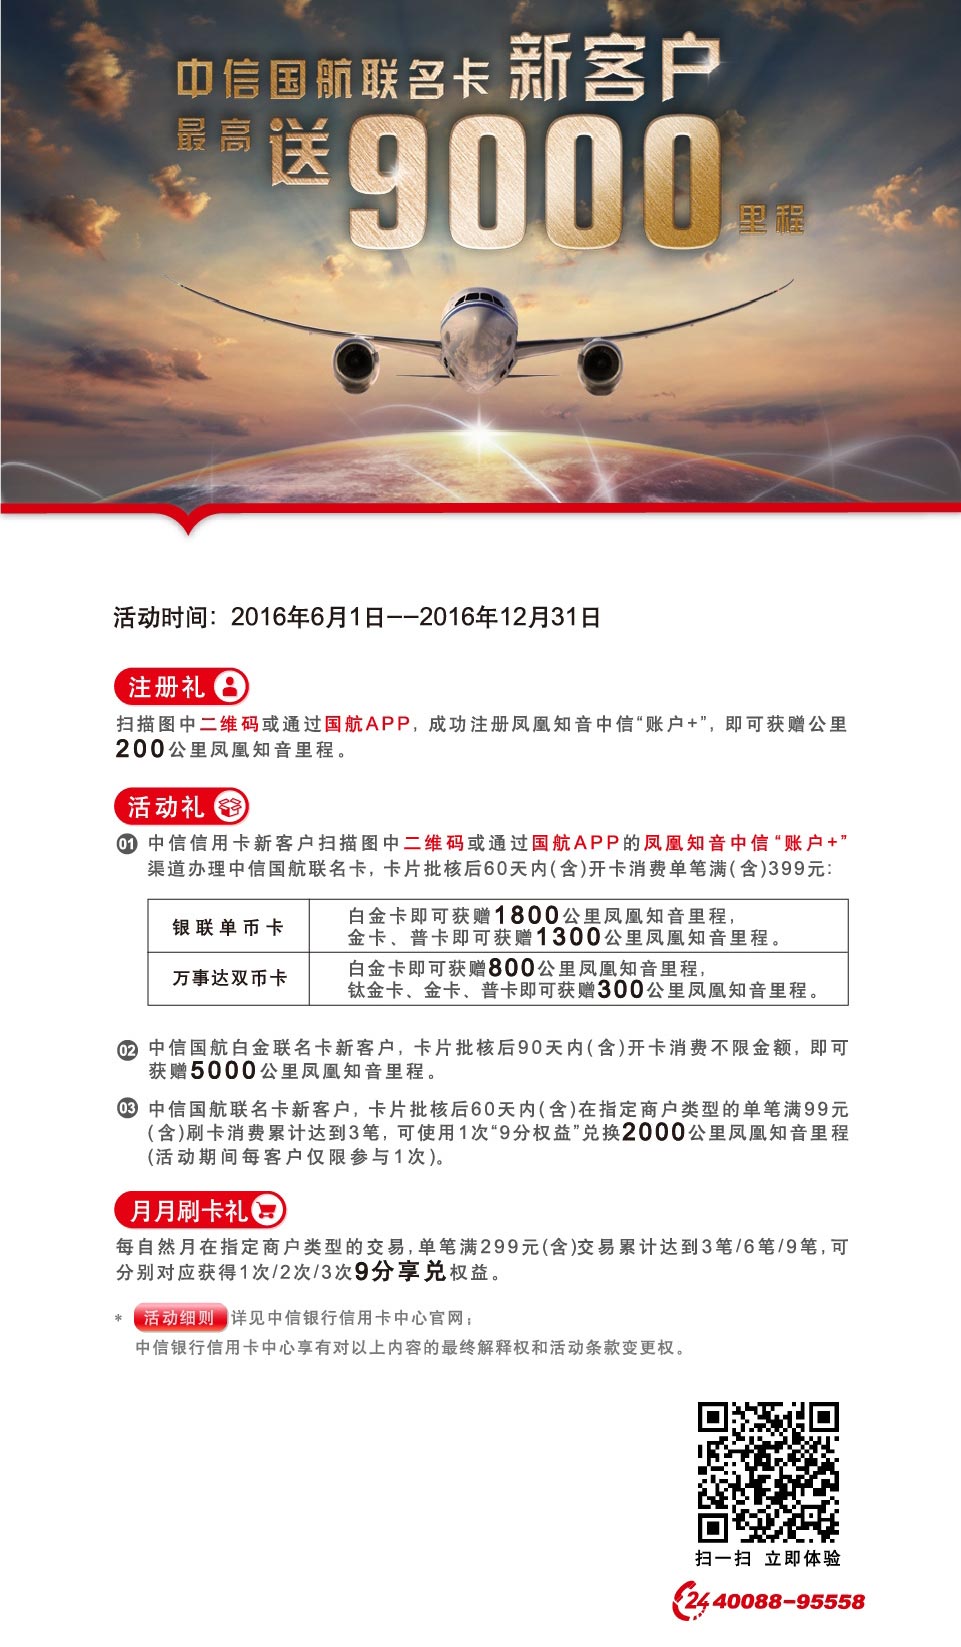 中信国航联名卡新客户最高送9000里程